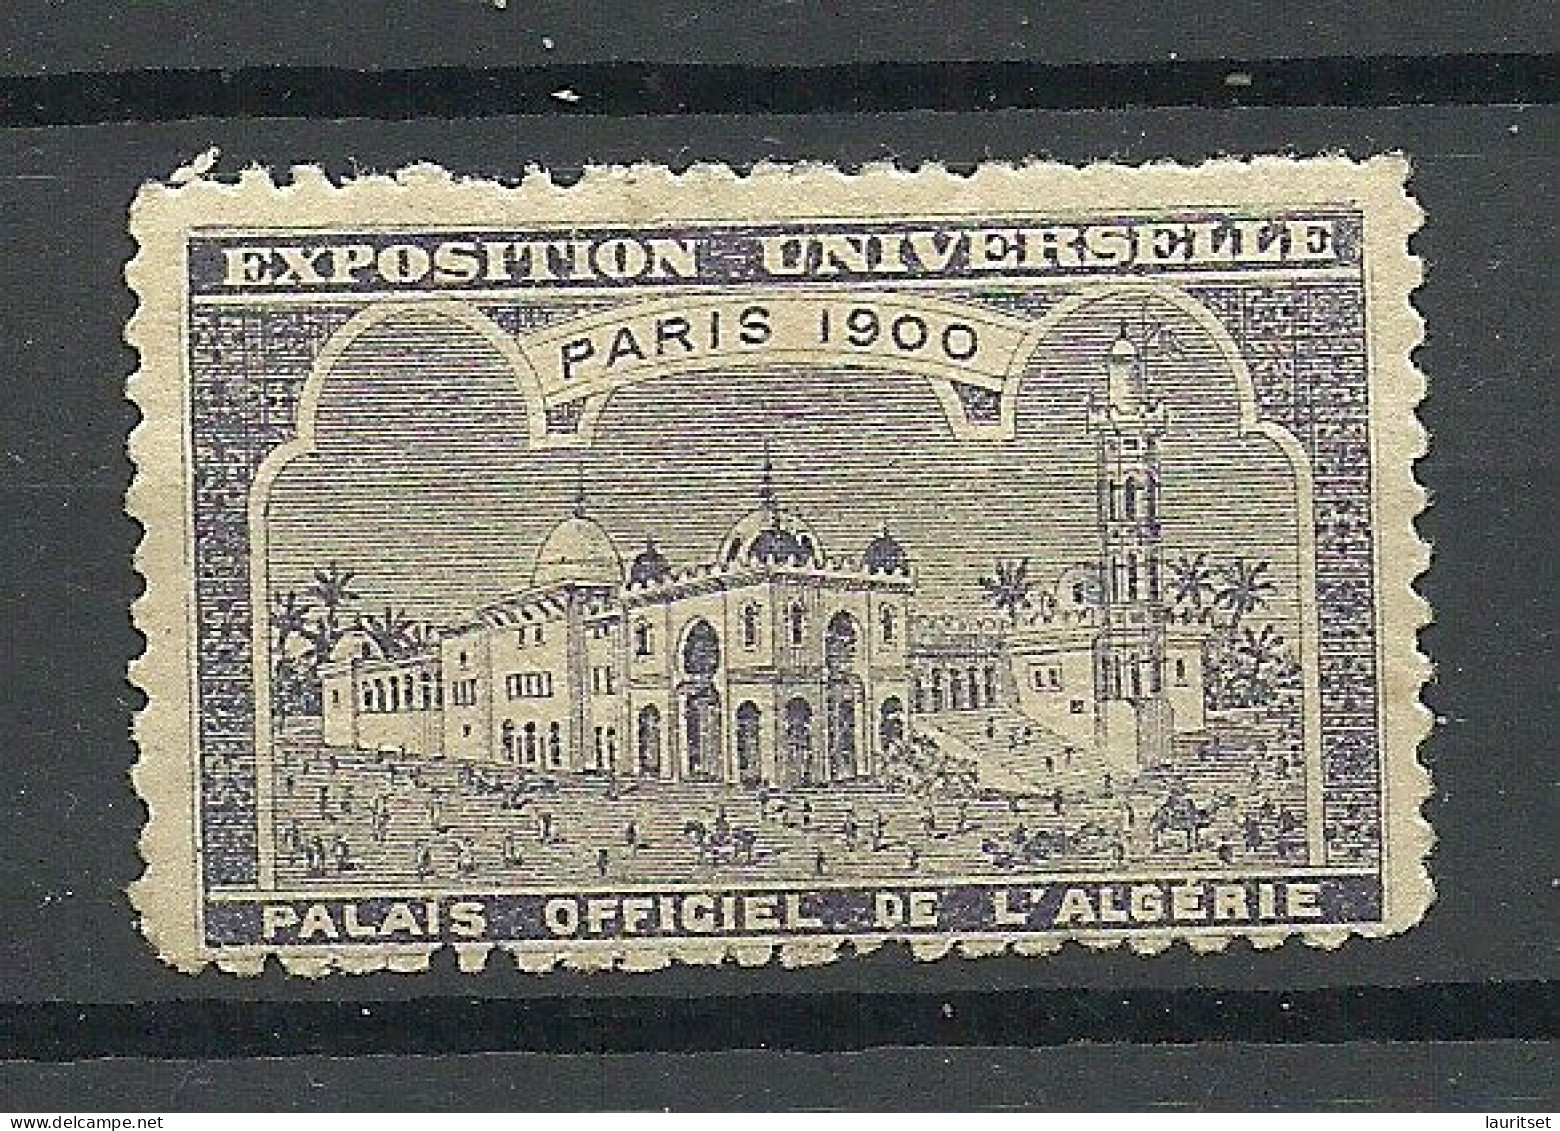 France 1900 EXPOSITION UNIVERSELLE Paris Algeria L`Algerie * - 1900 – Paris (Frankreich)